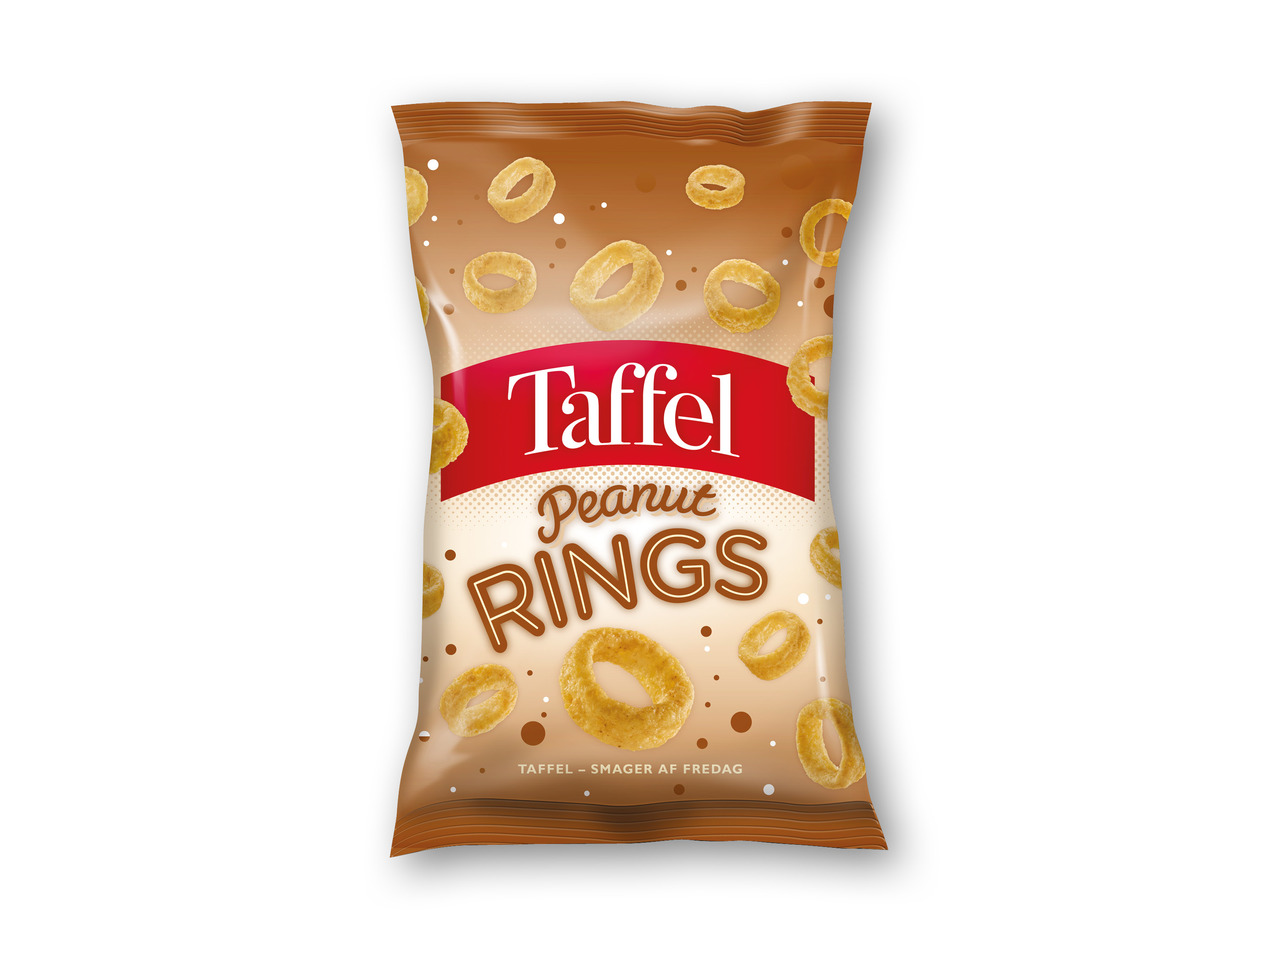 TAFFEL Chips